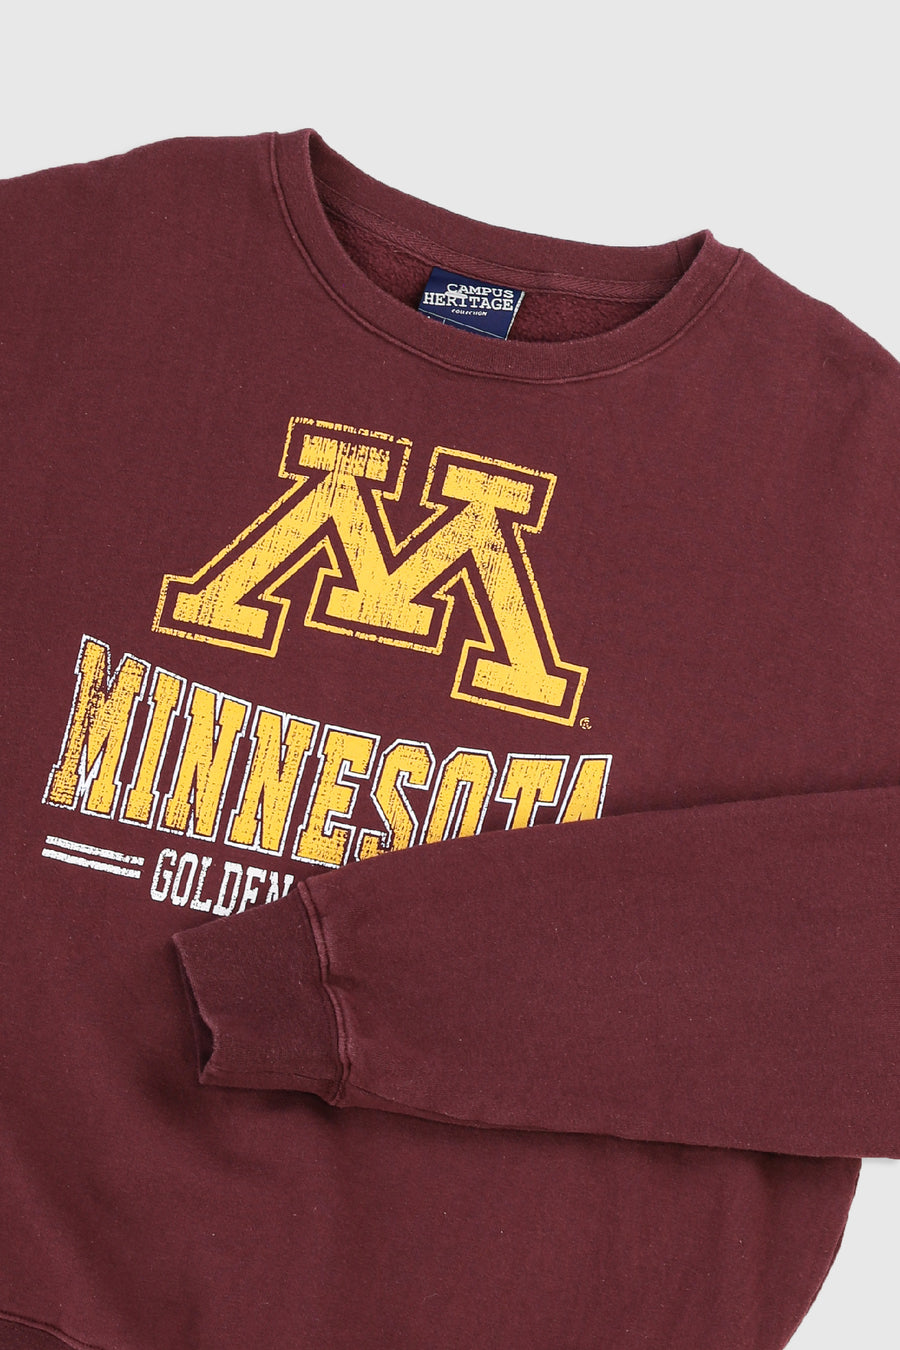 Vintage Minnesota Sweatshirt